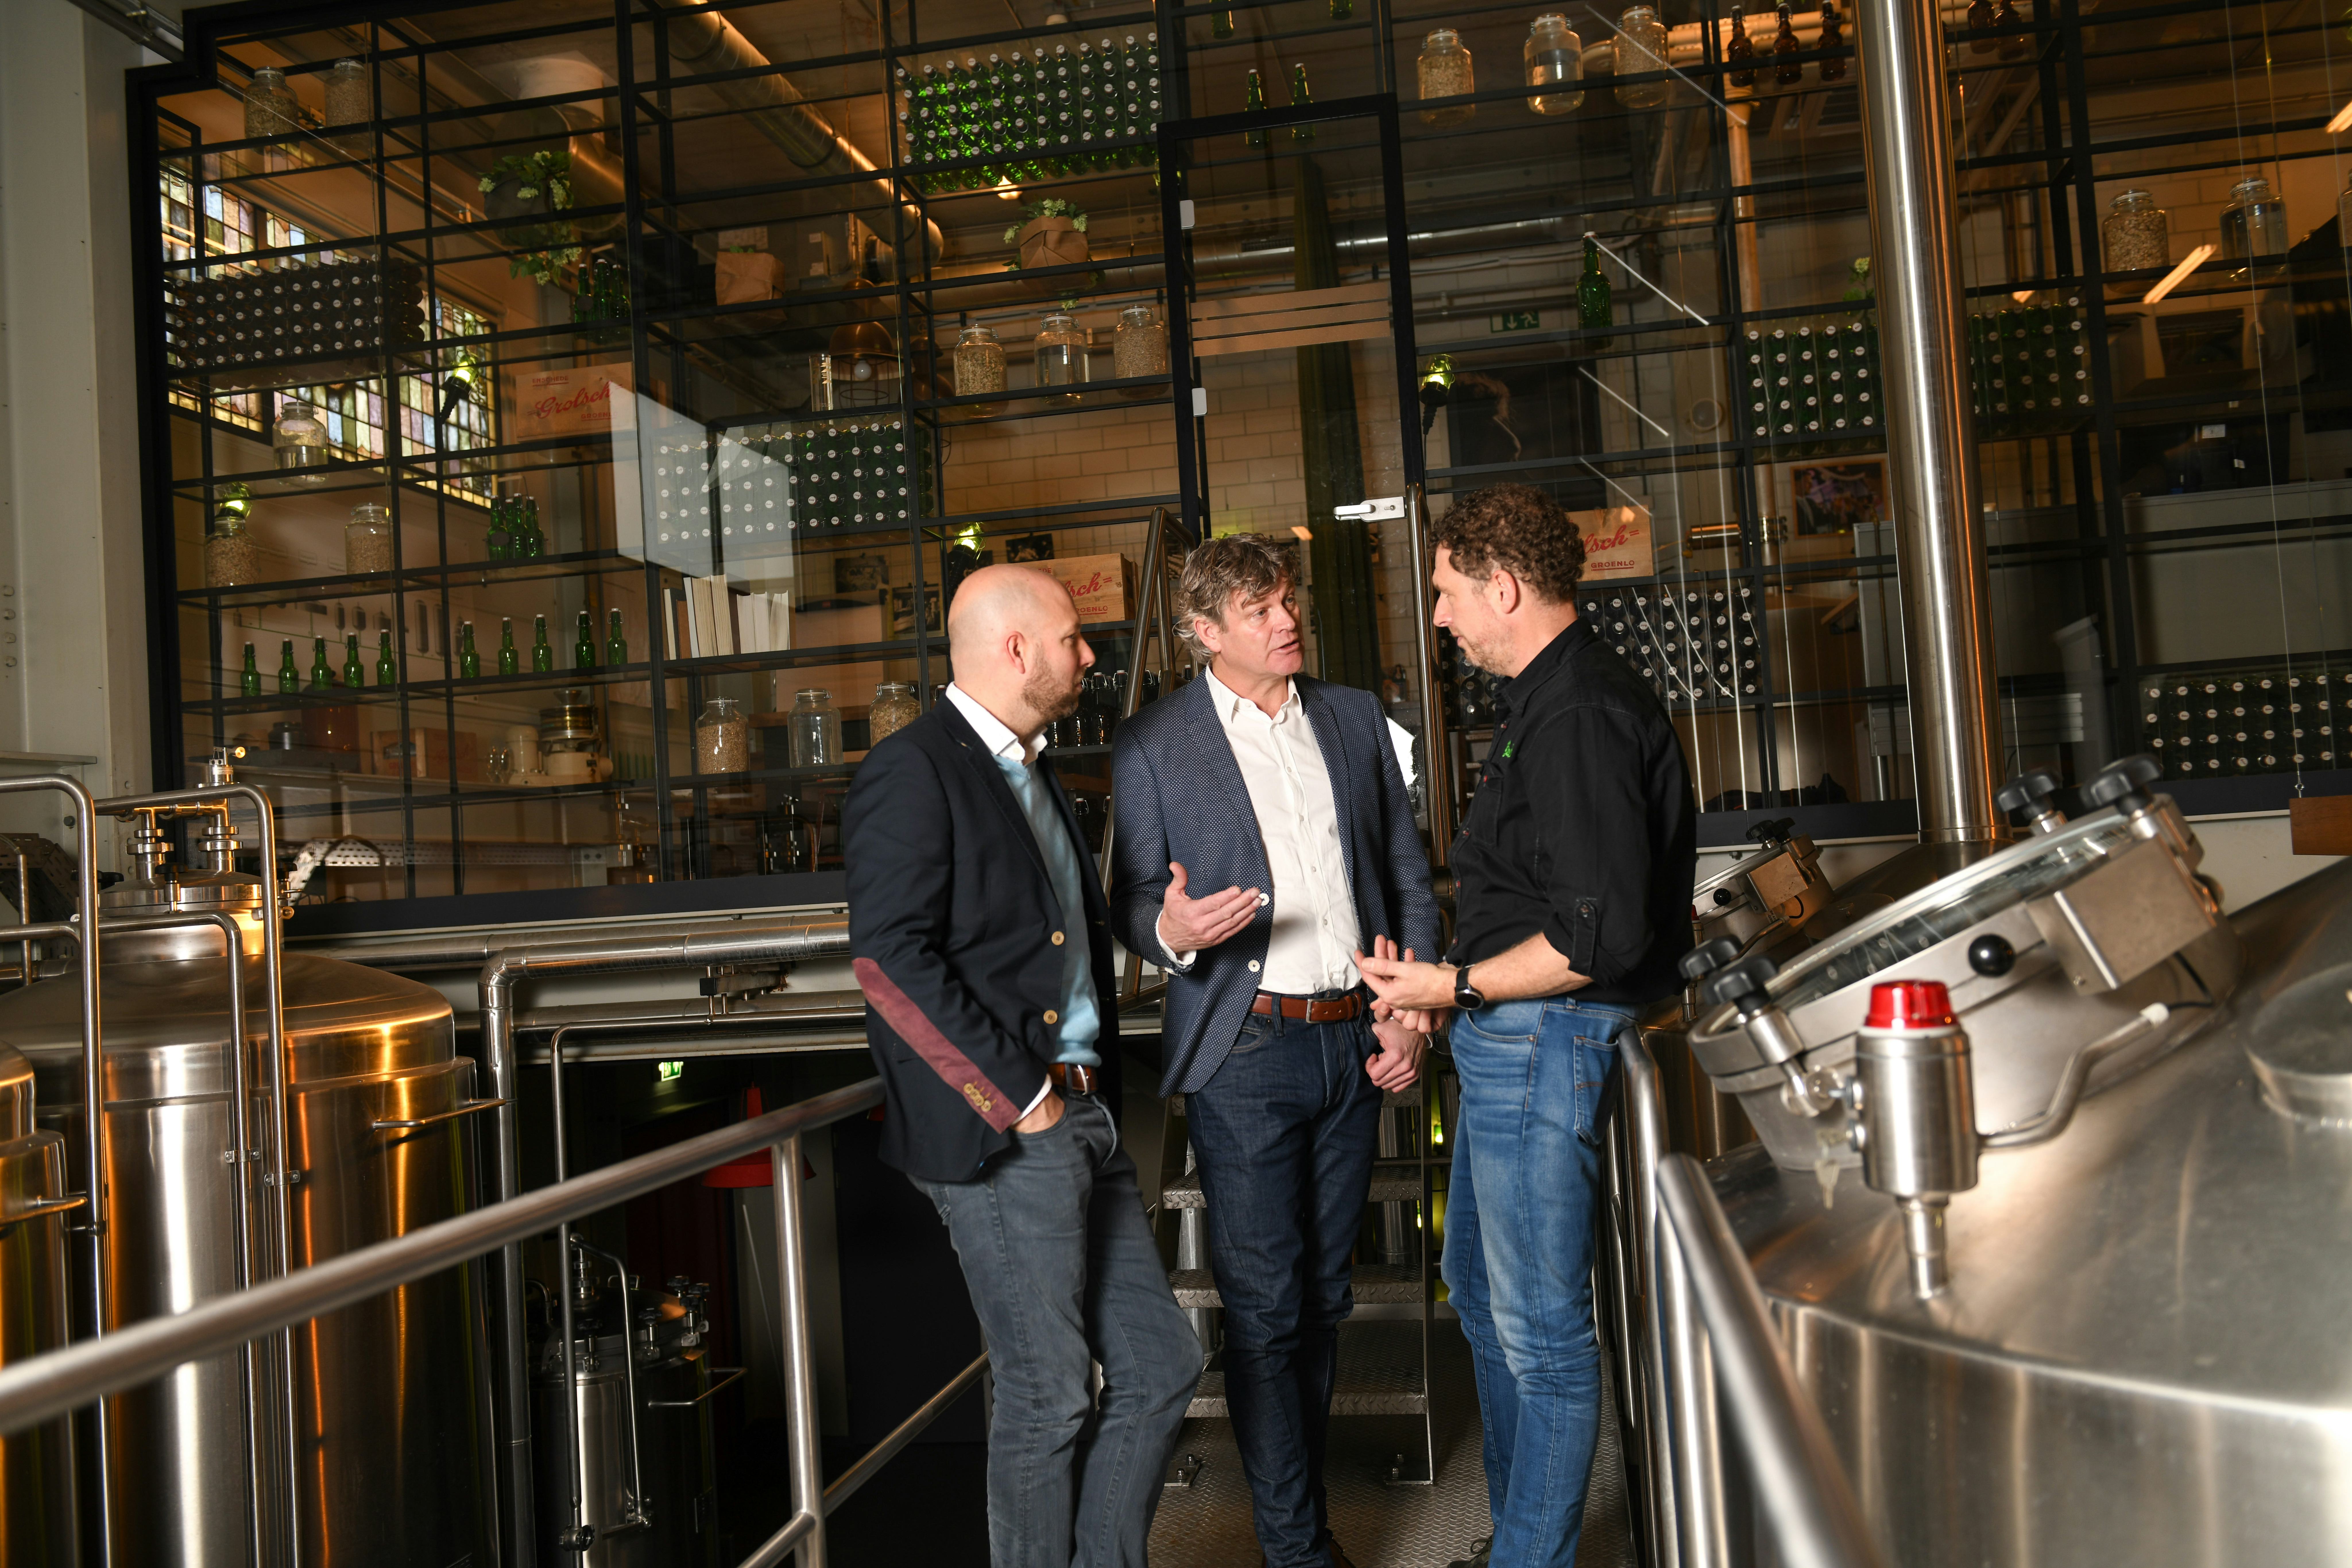 Ard Bossema, Jacco Potkamp en Meesterbrouwer Marc Janssen (v.l.n.r.) in de Proefbrouwerij.